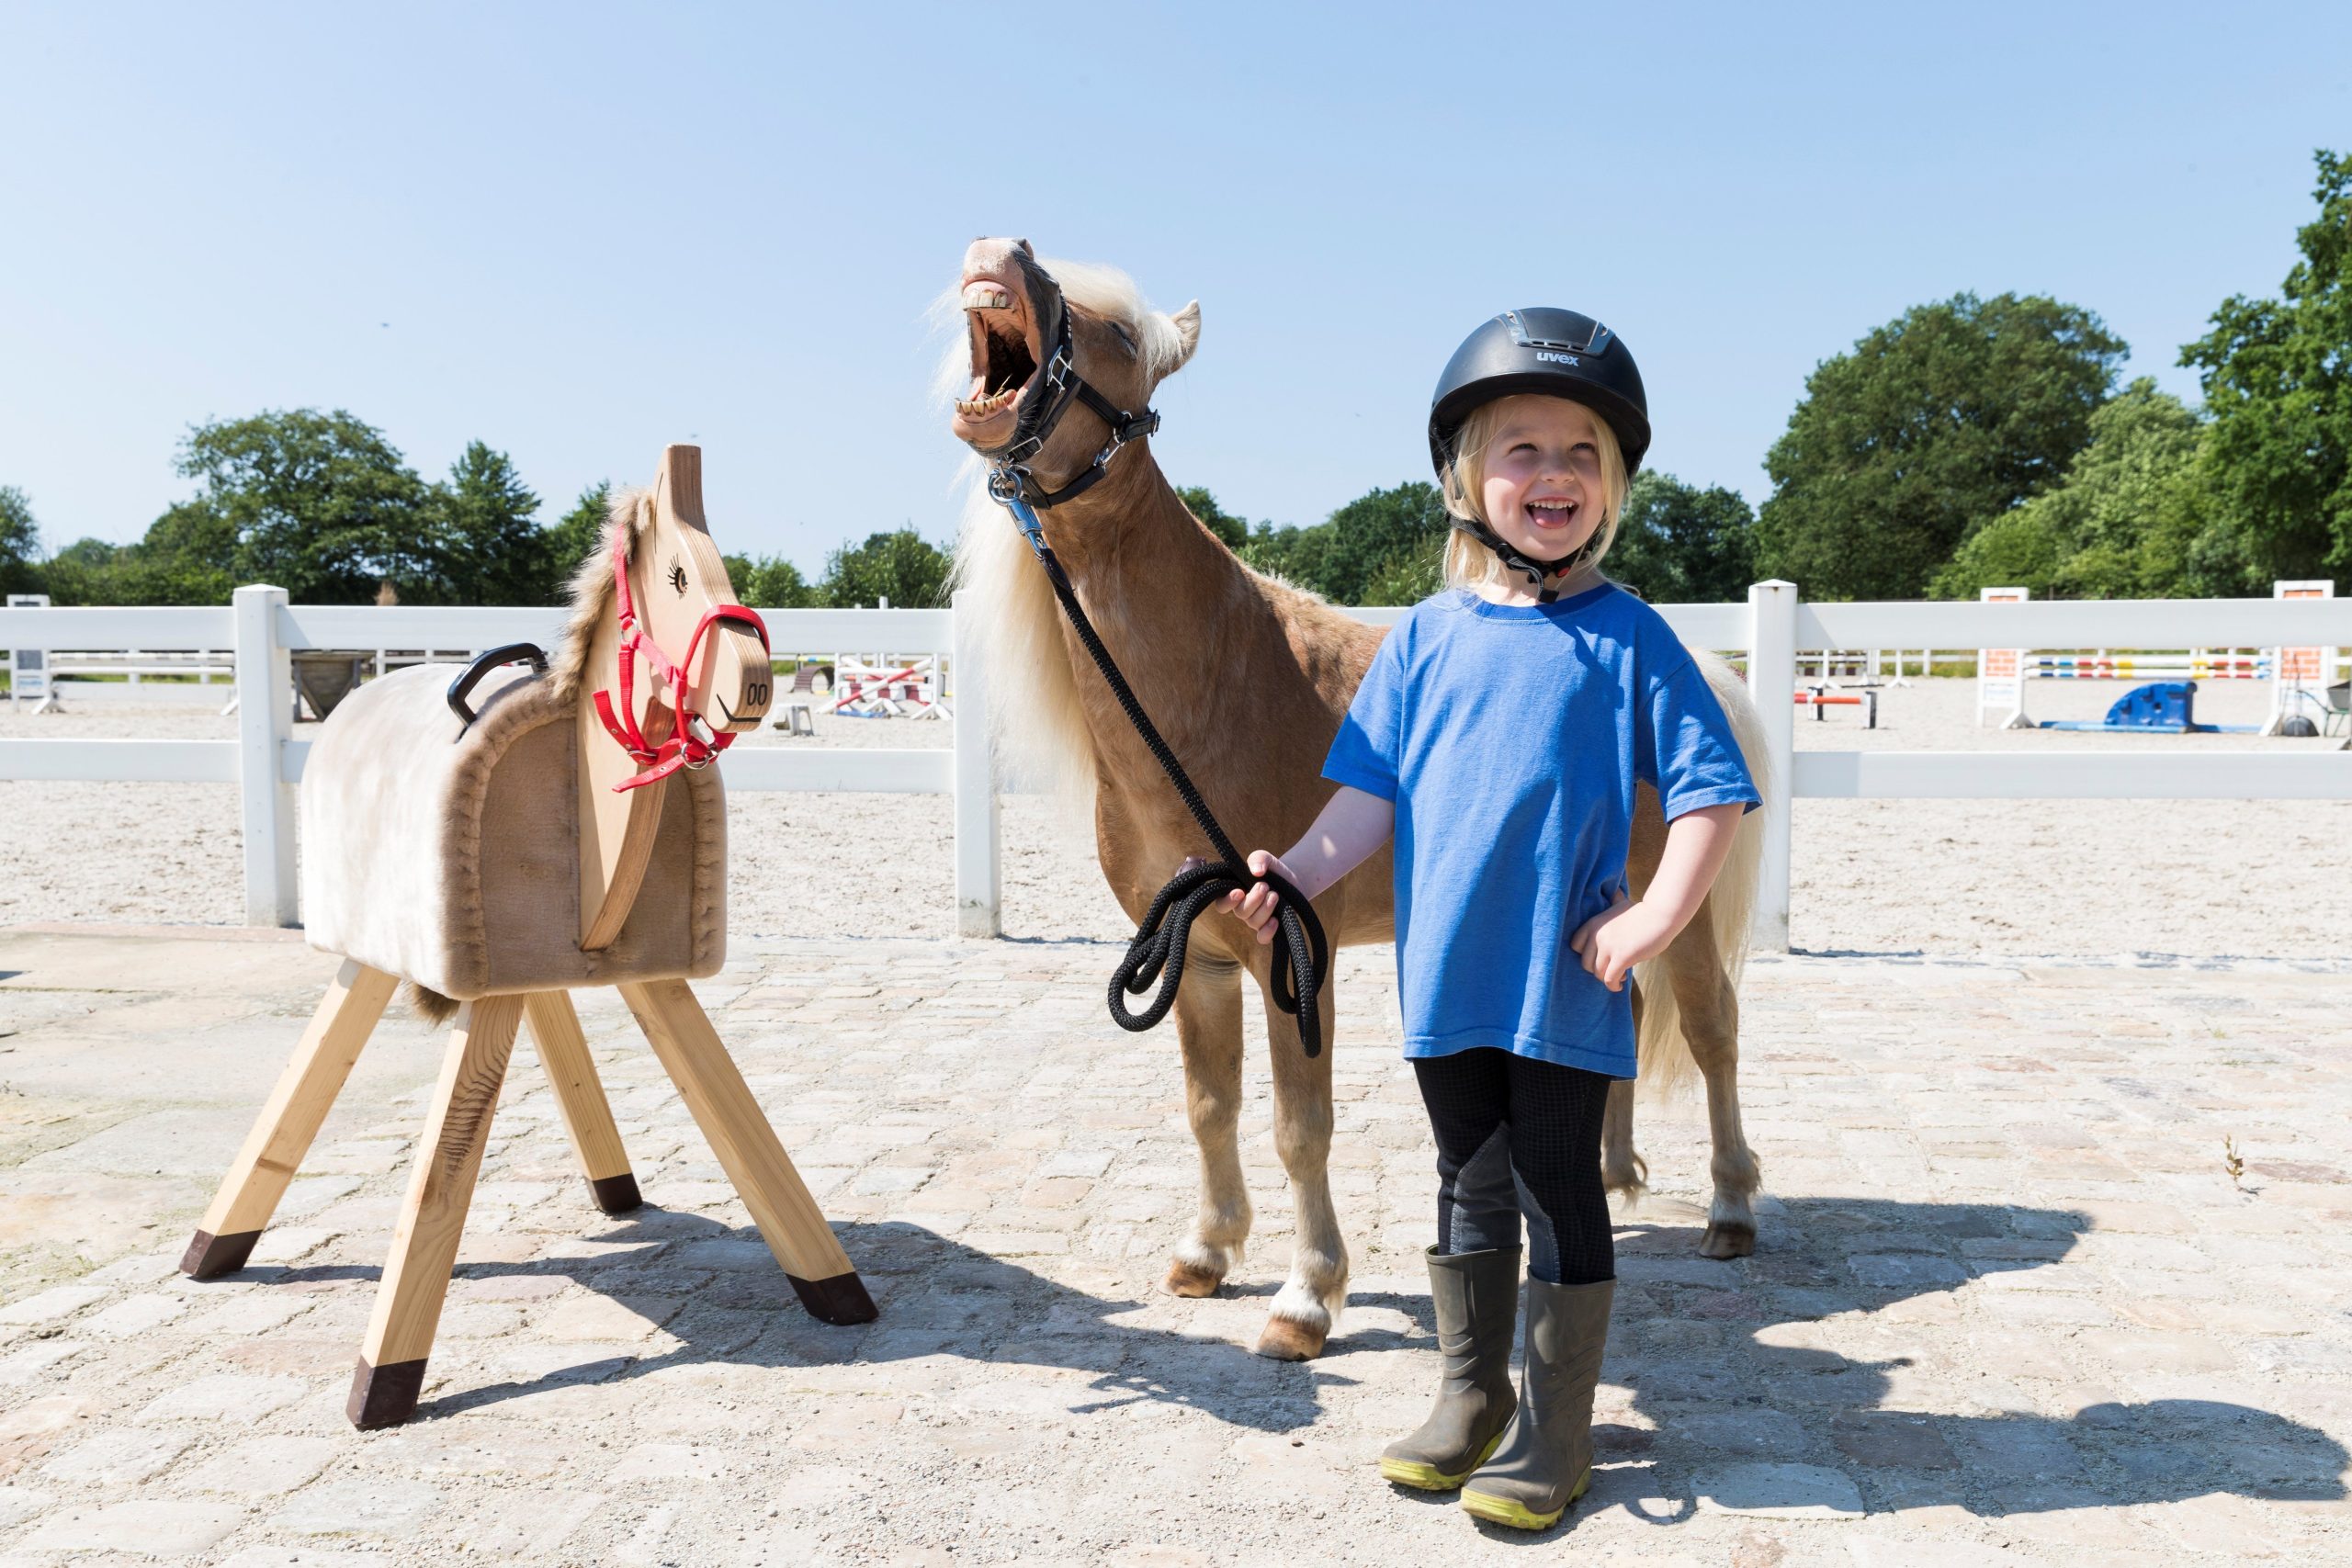 Pferdeerlebnistage- eine Aktion der FN-Abteilung Pferdesportentwicklung und Pferde für unsere Kinder. Foto: Thomas Hellmann